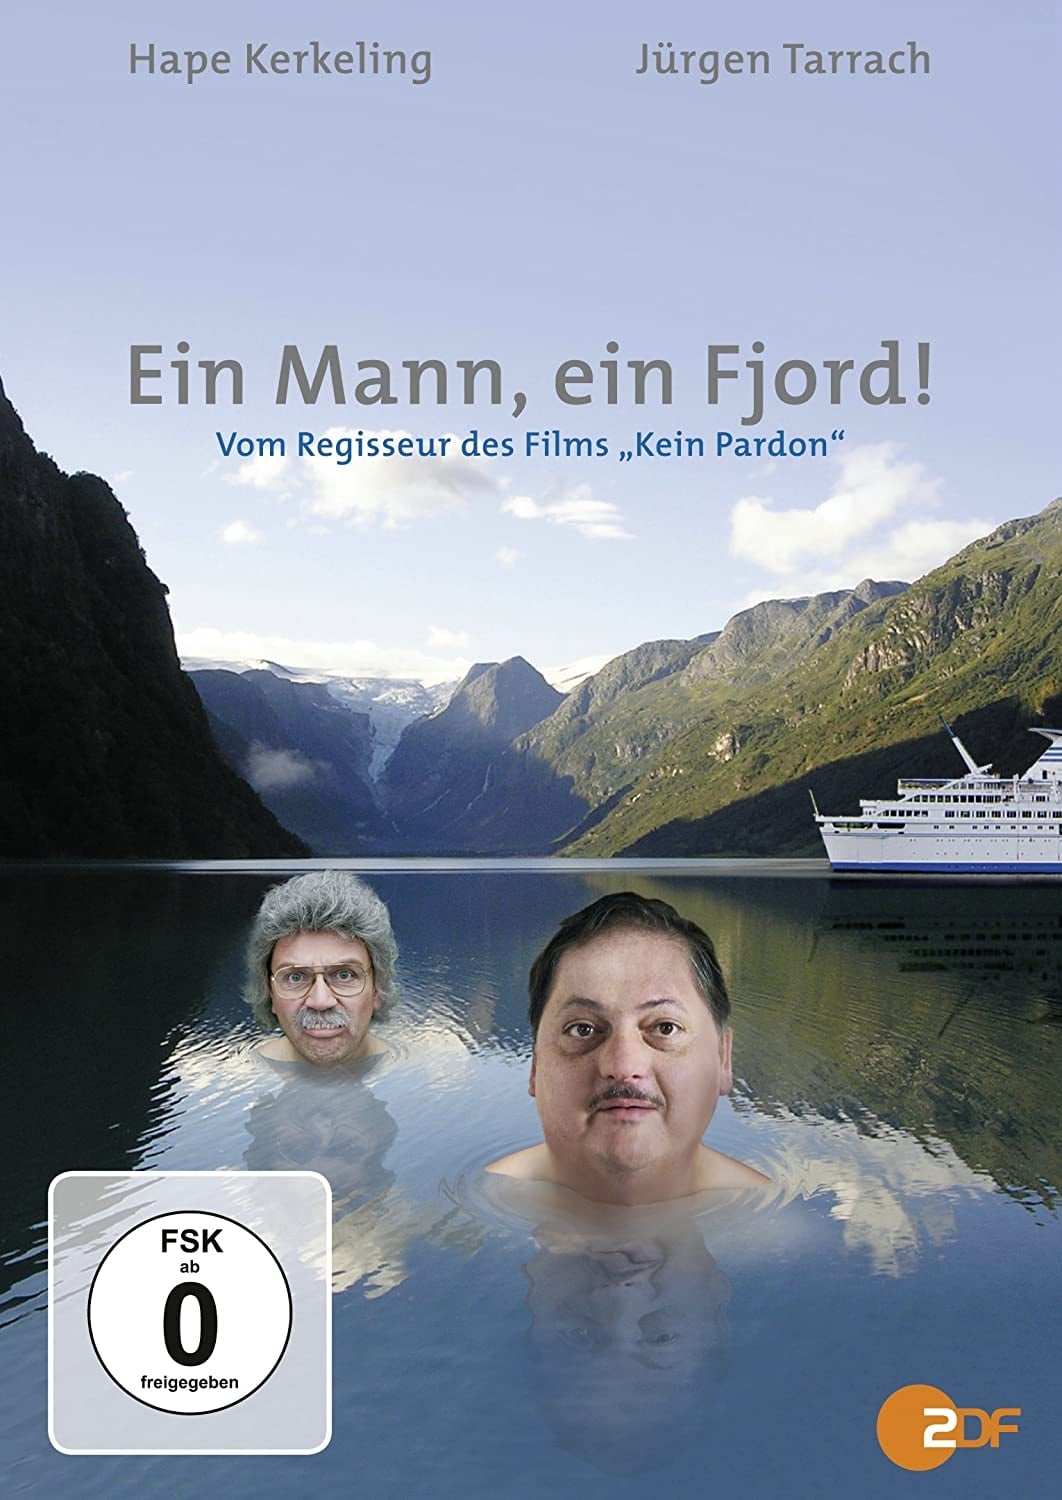 A man, a fjord!